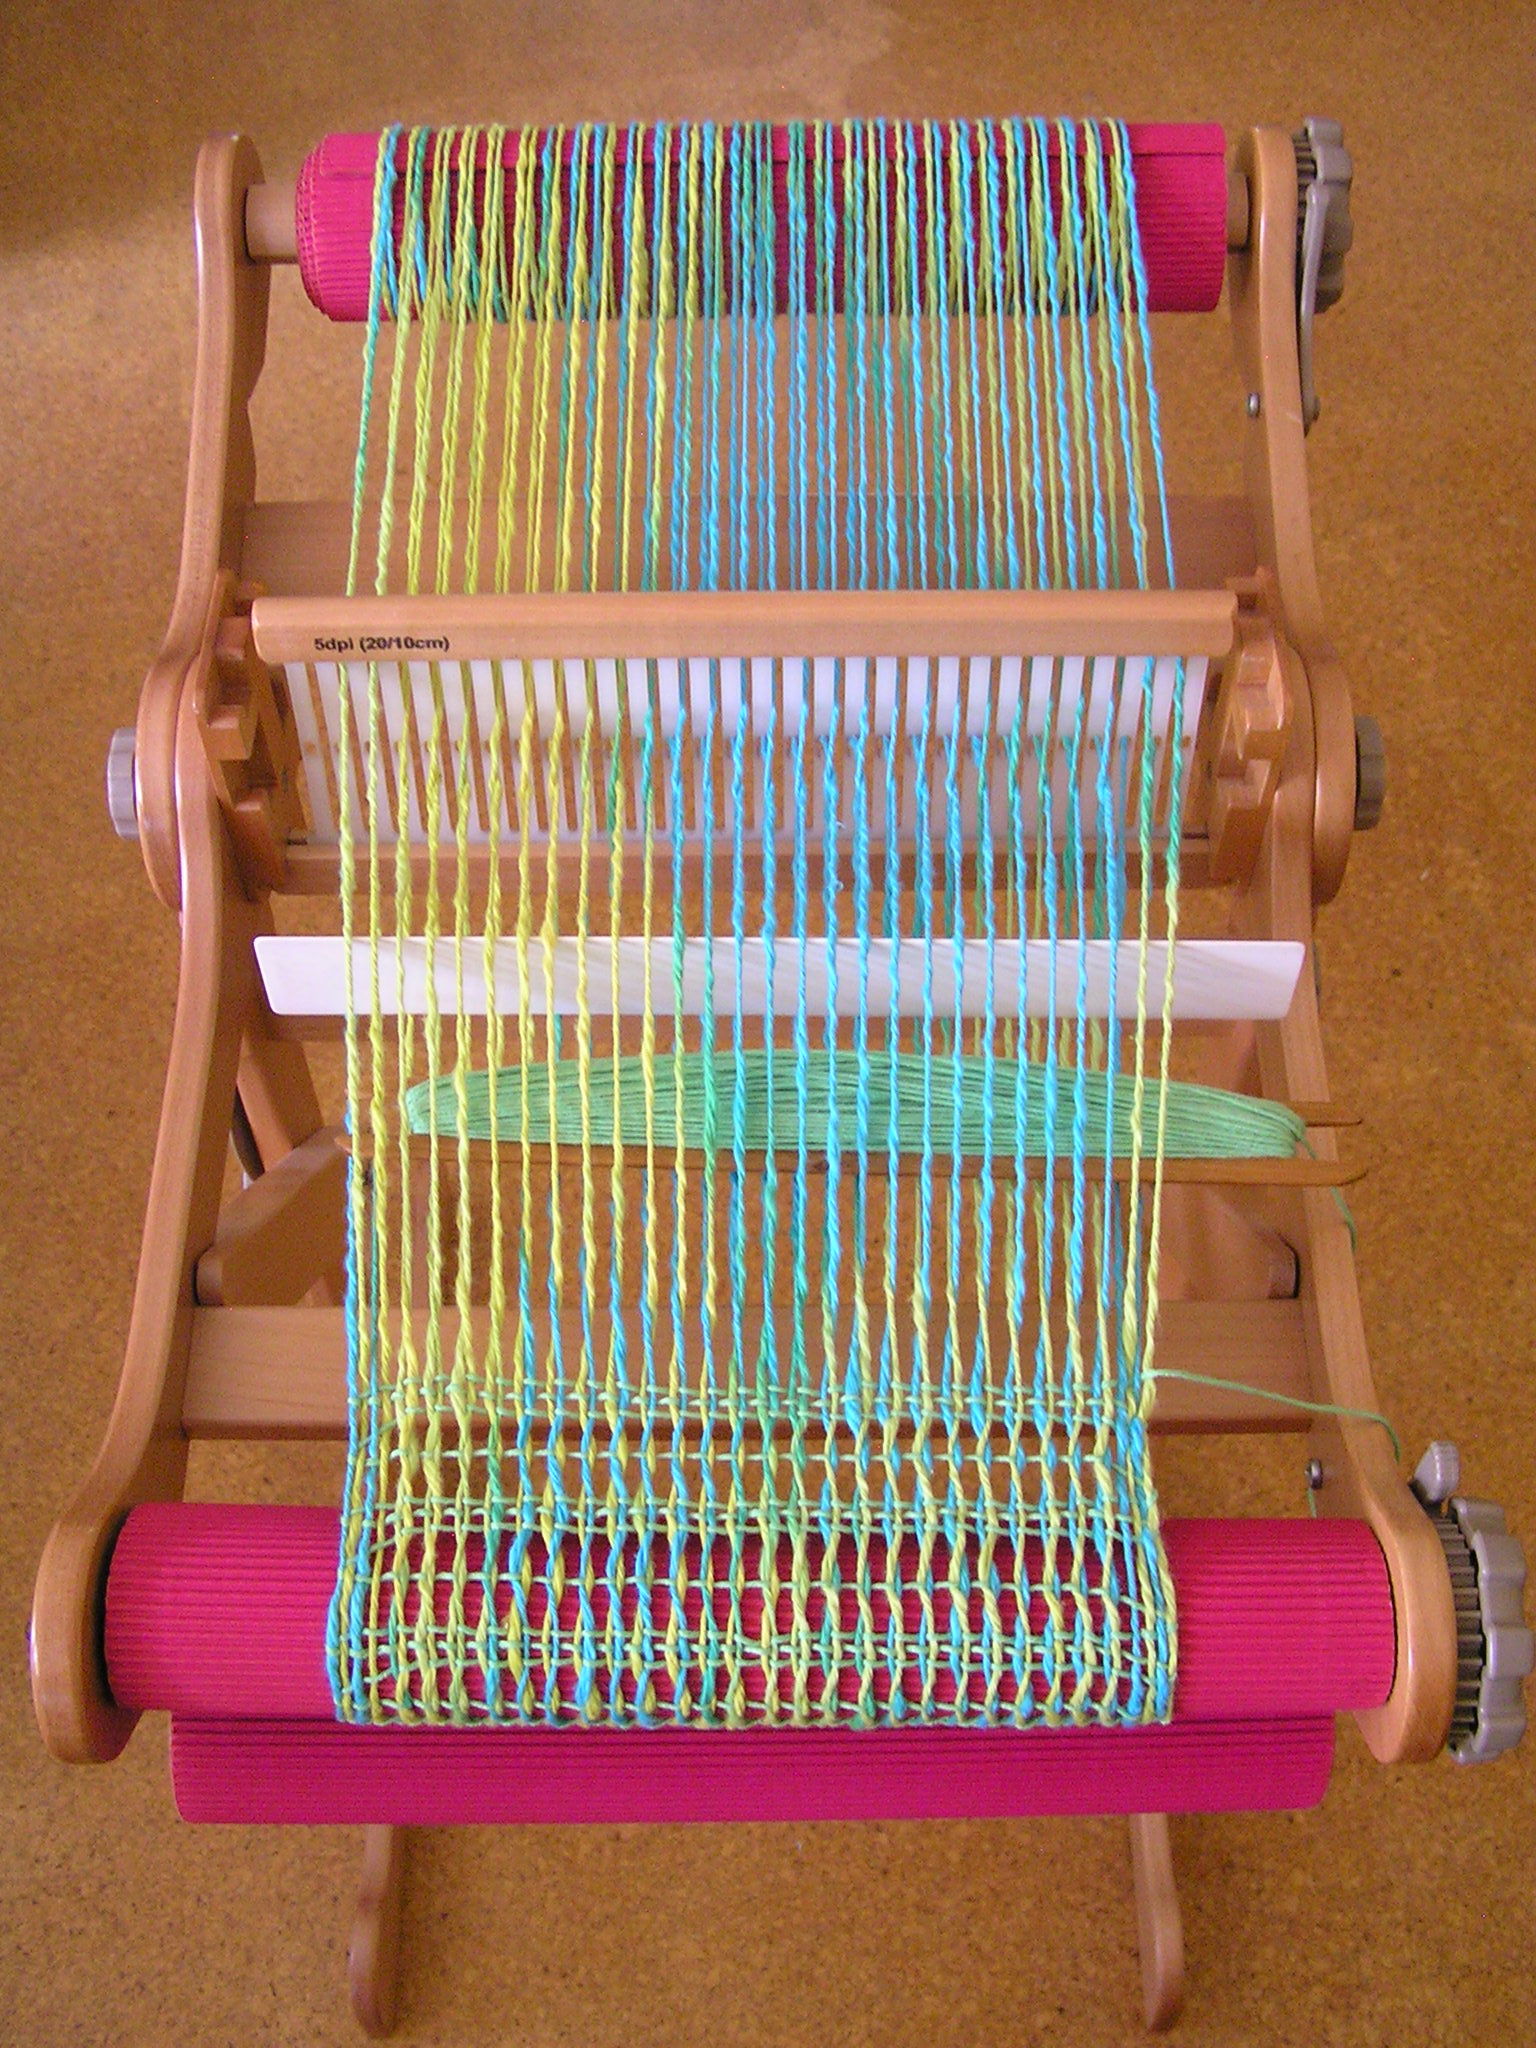 Leno pattern in progress on rigid heddle loom